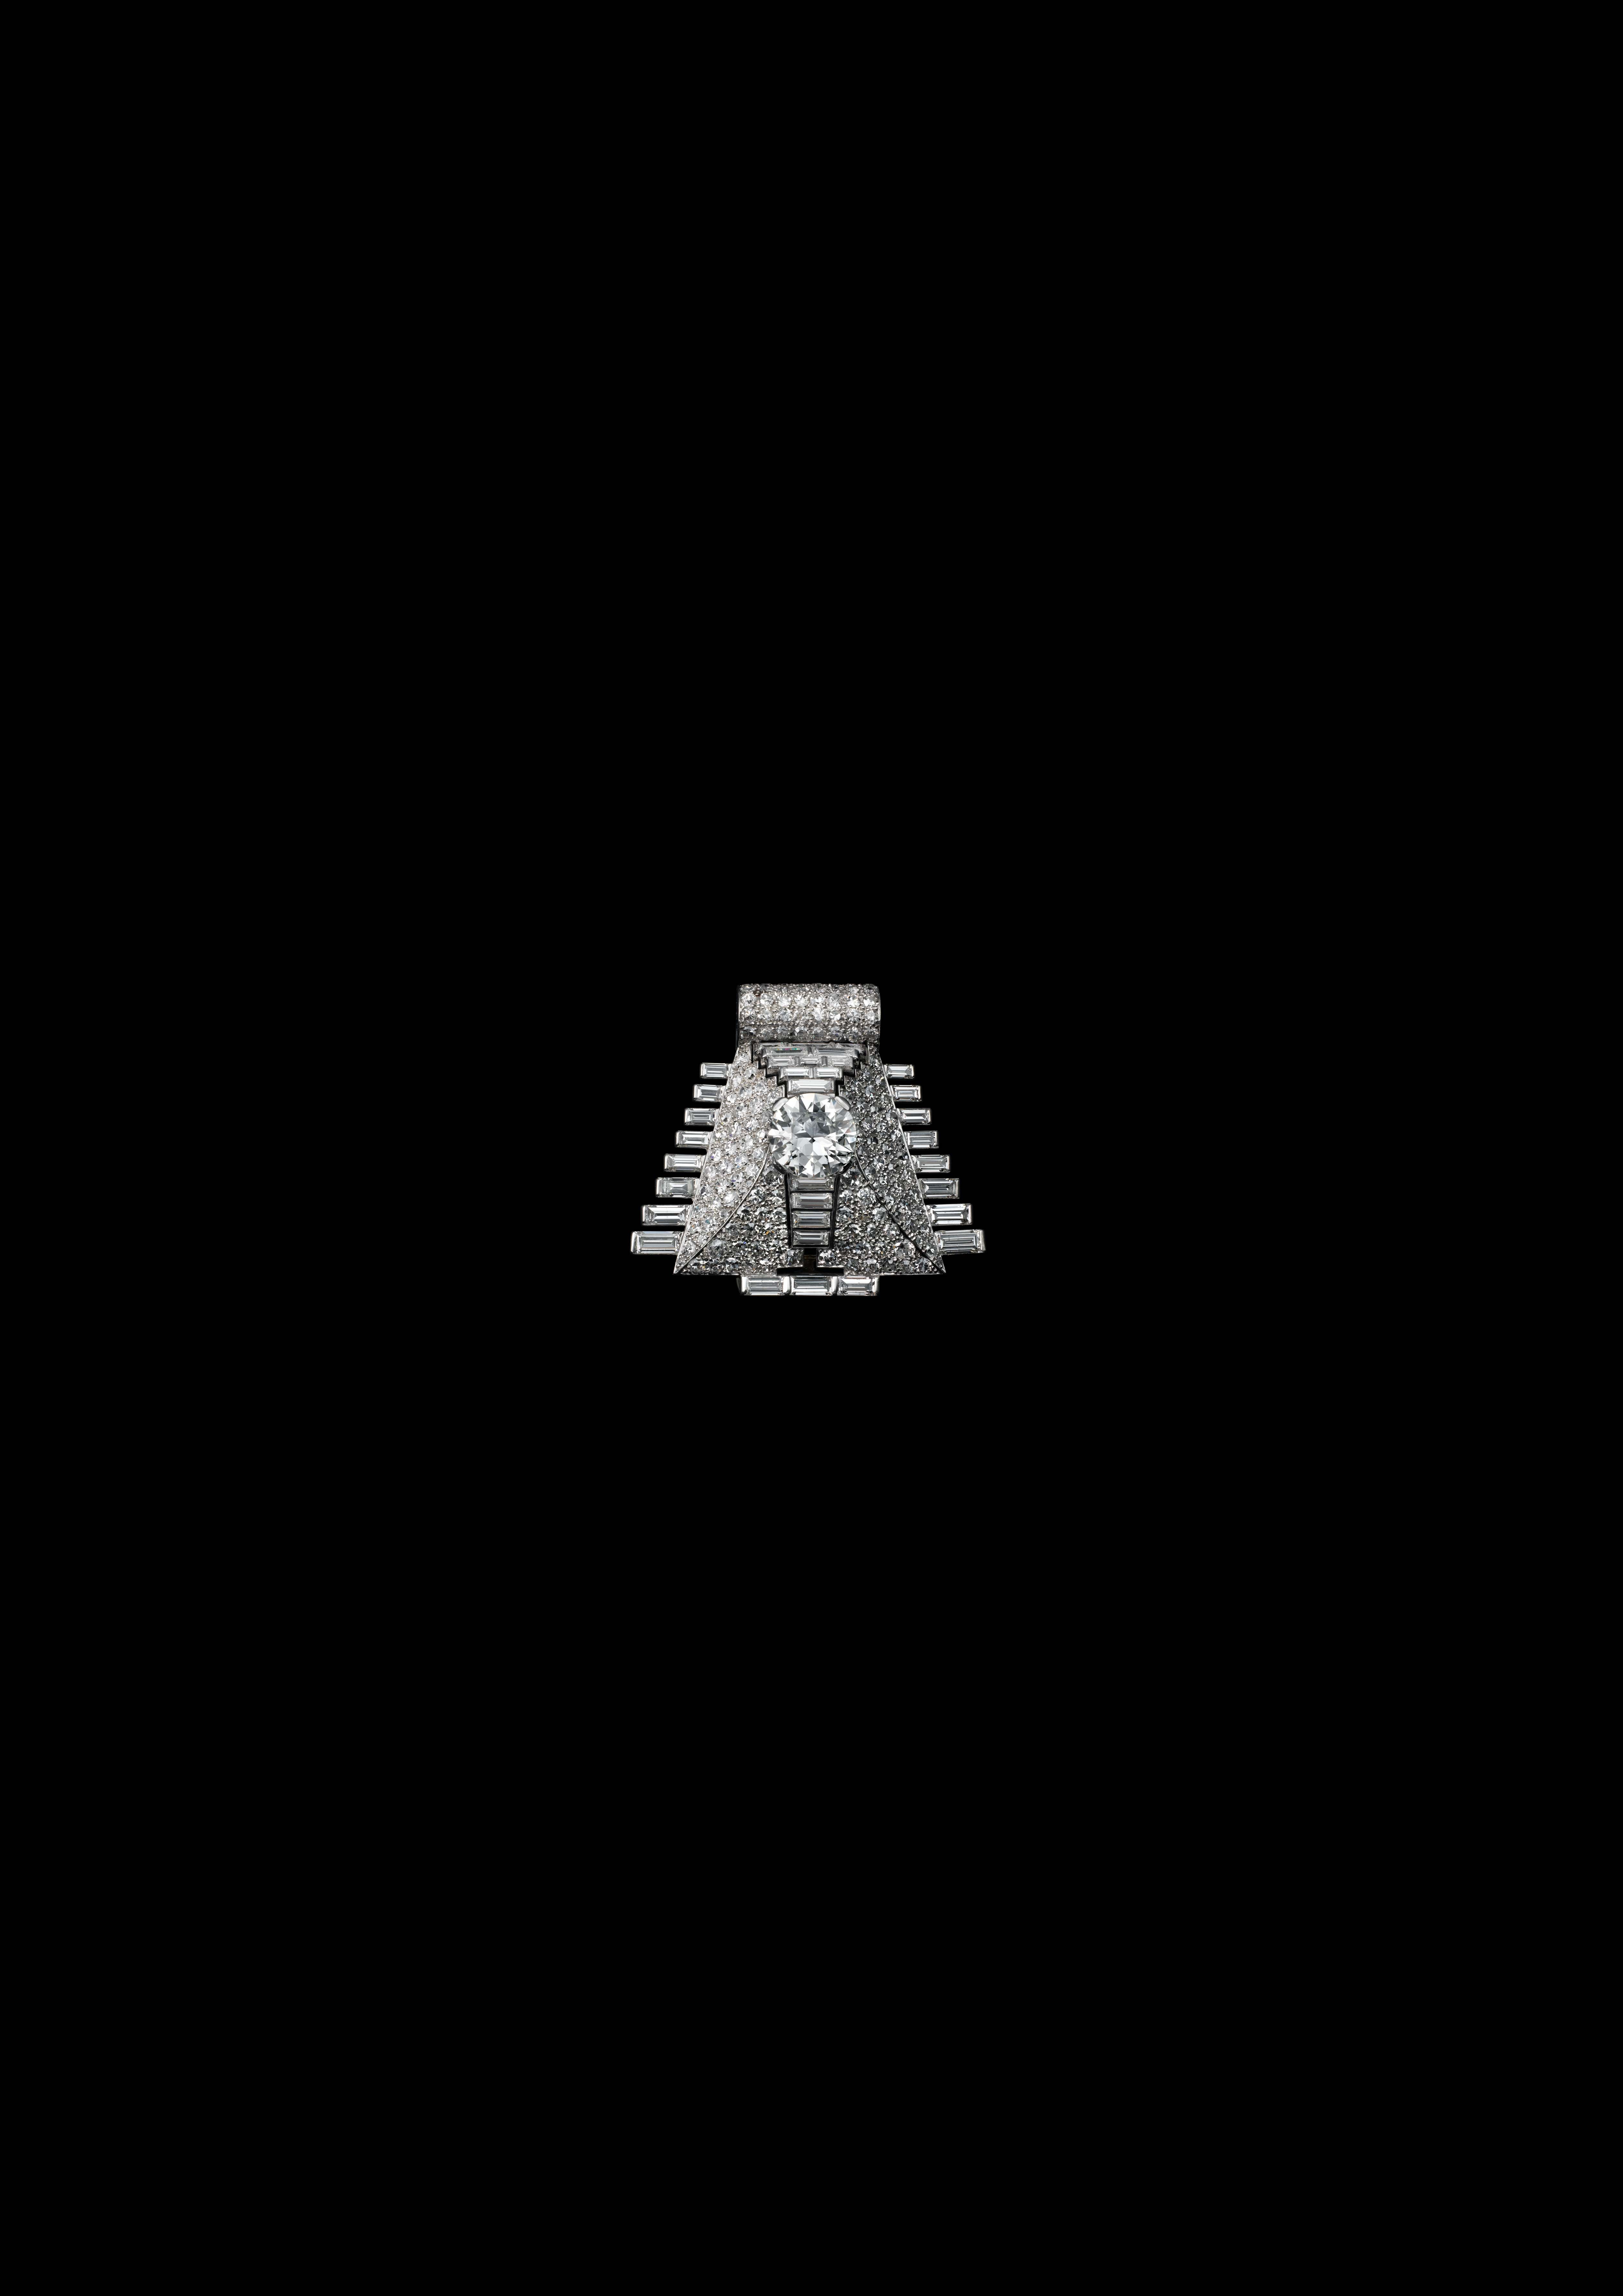 Broche-pince ‘Pyramide’, Cartier Paris, commande de 1935.
Platine, diamants ronds taille ancienne, dont un de 4,20 carats environ, diamants taille baguette et 8/8. Photo : Vincent Wulveryck, Collection Cartier © Cartier